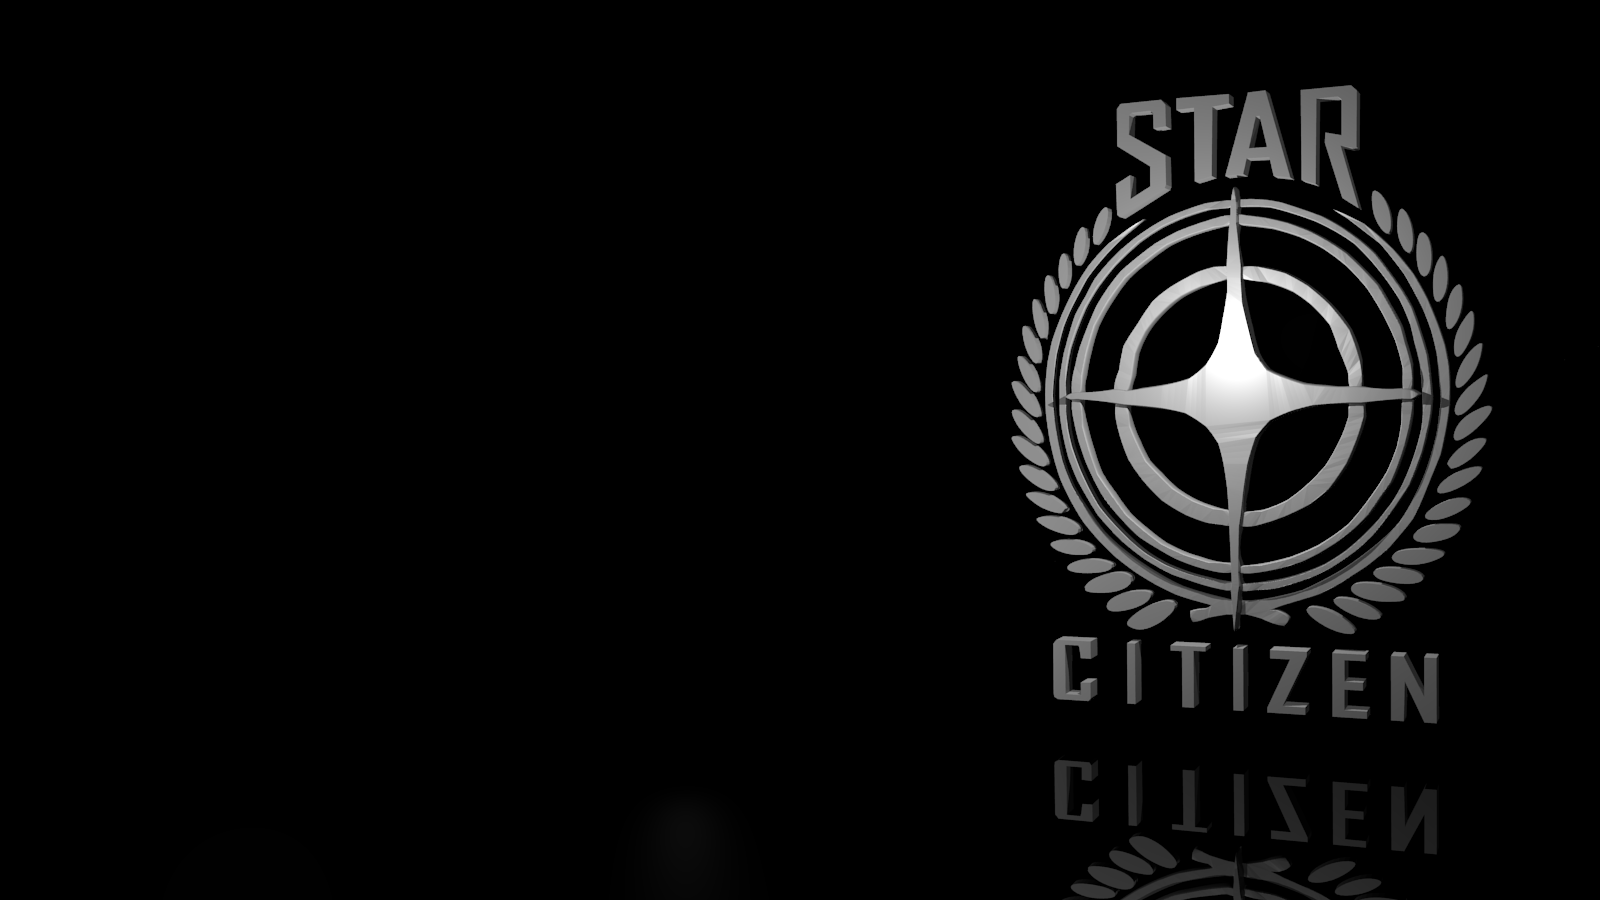 Star and White R Logo - Star Citizen 3D Logo Wallpaper (1600x900) - Imgur